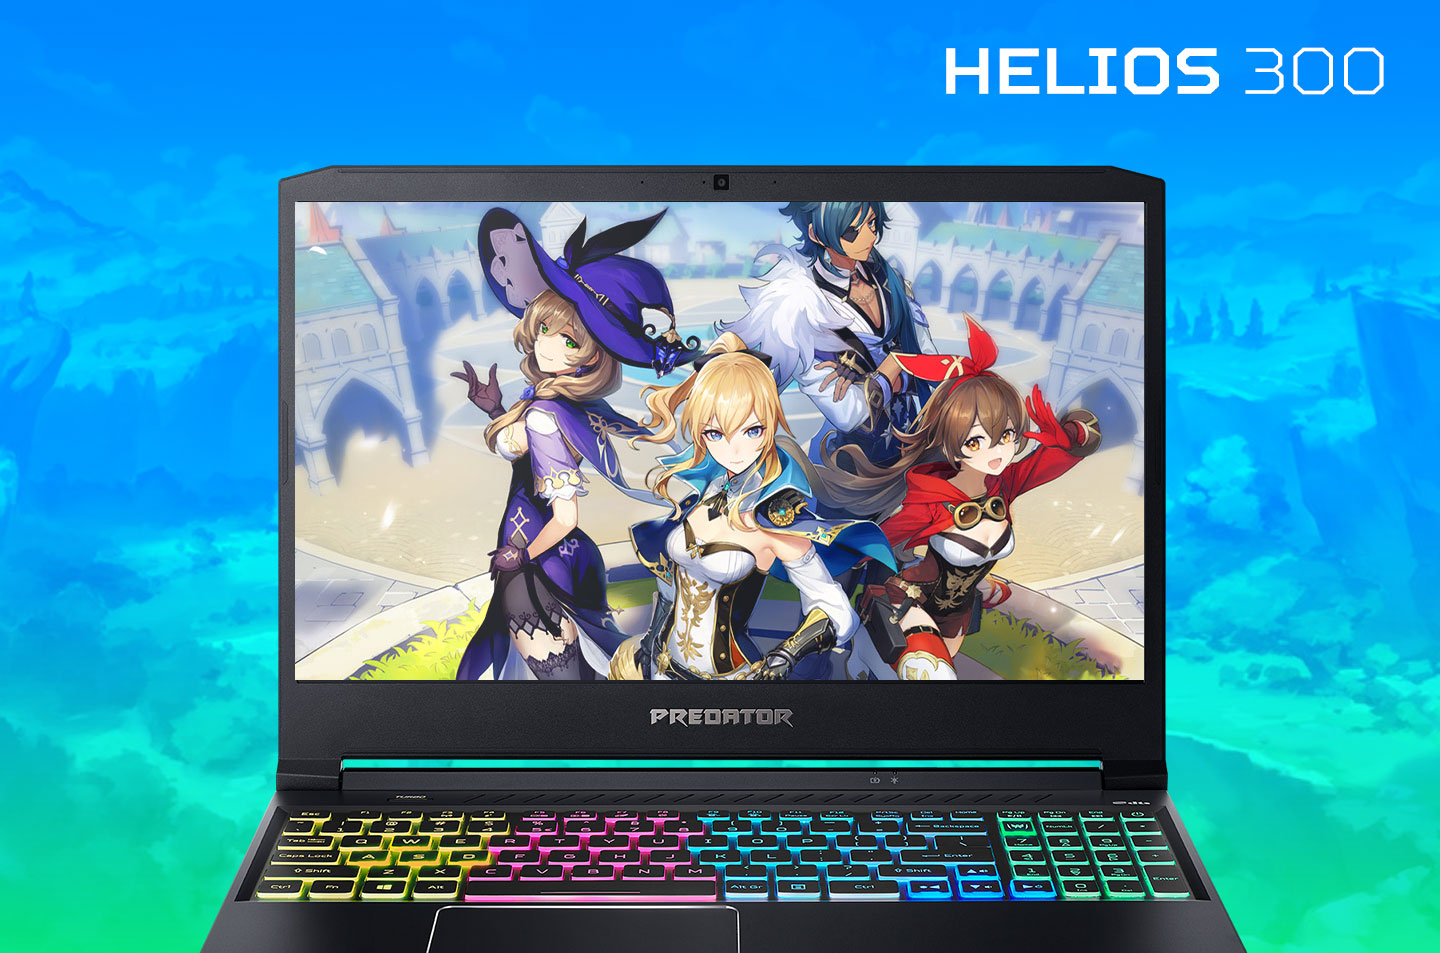 Inner_helios-300-5-Game-PC-dengan-Grafis-Paling-Ciamik-yang-Seru-Dimainkan-dengan-Laptop-Gaming-Terbaik-Predator-Helios-300